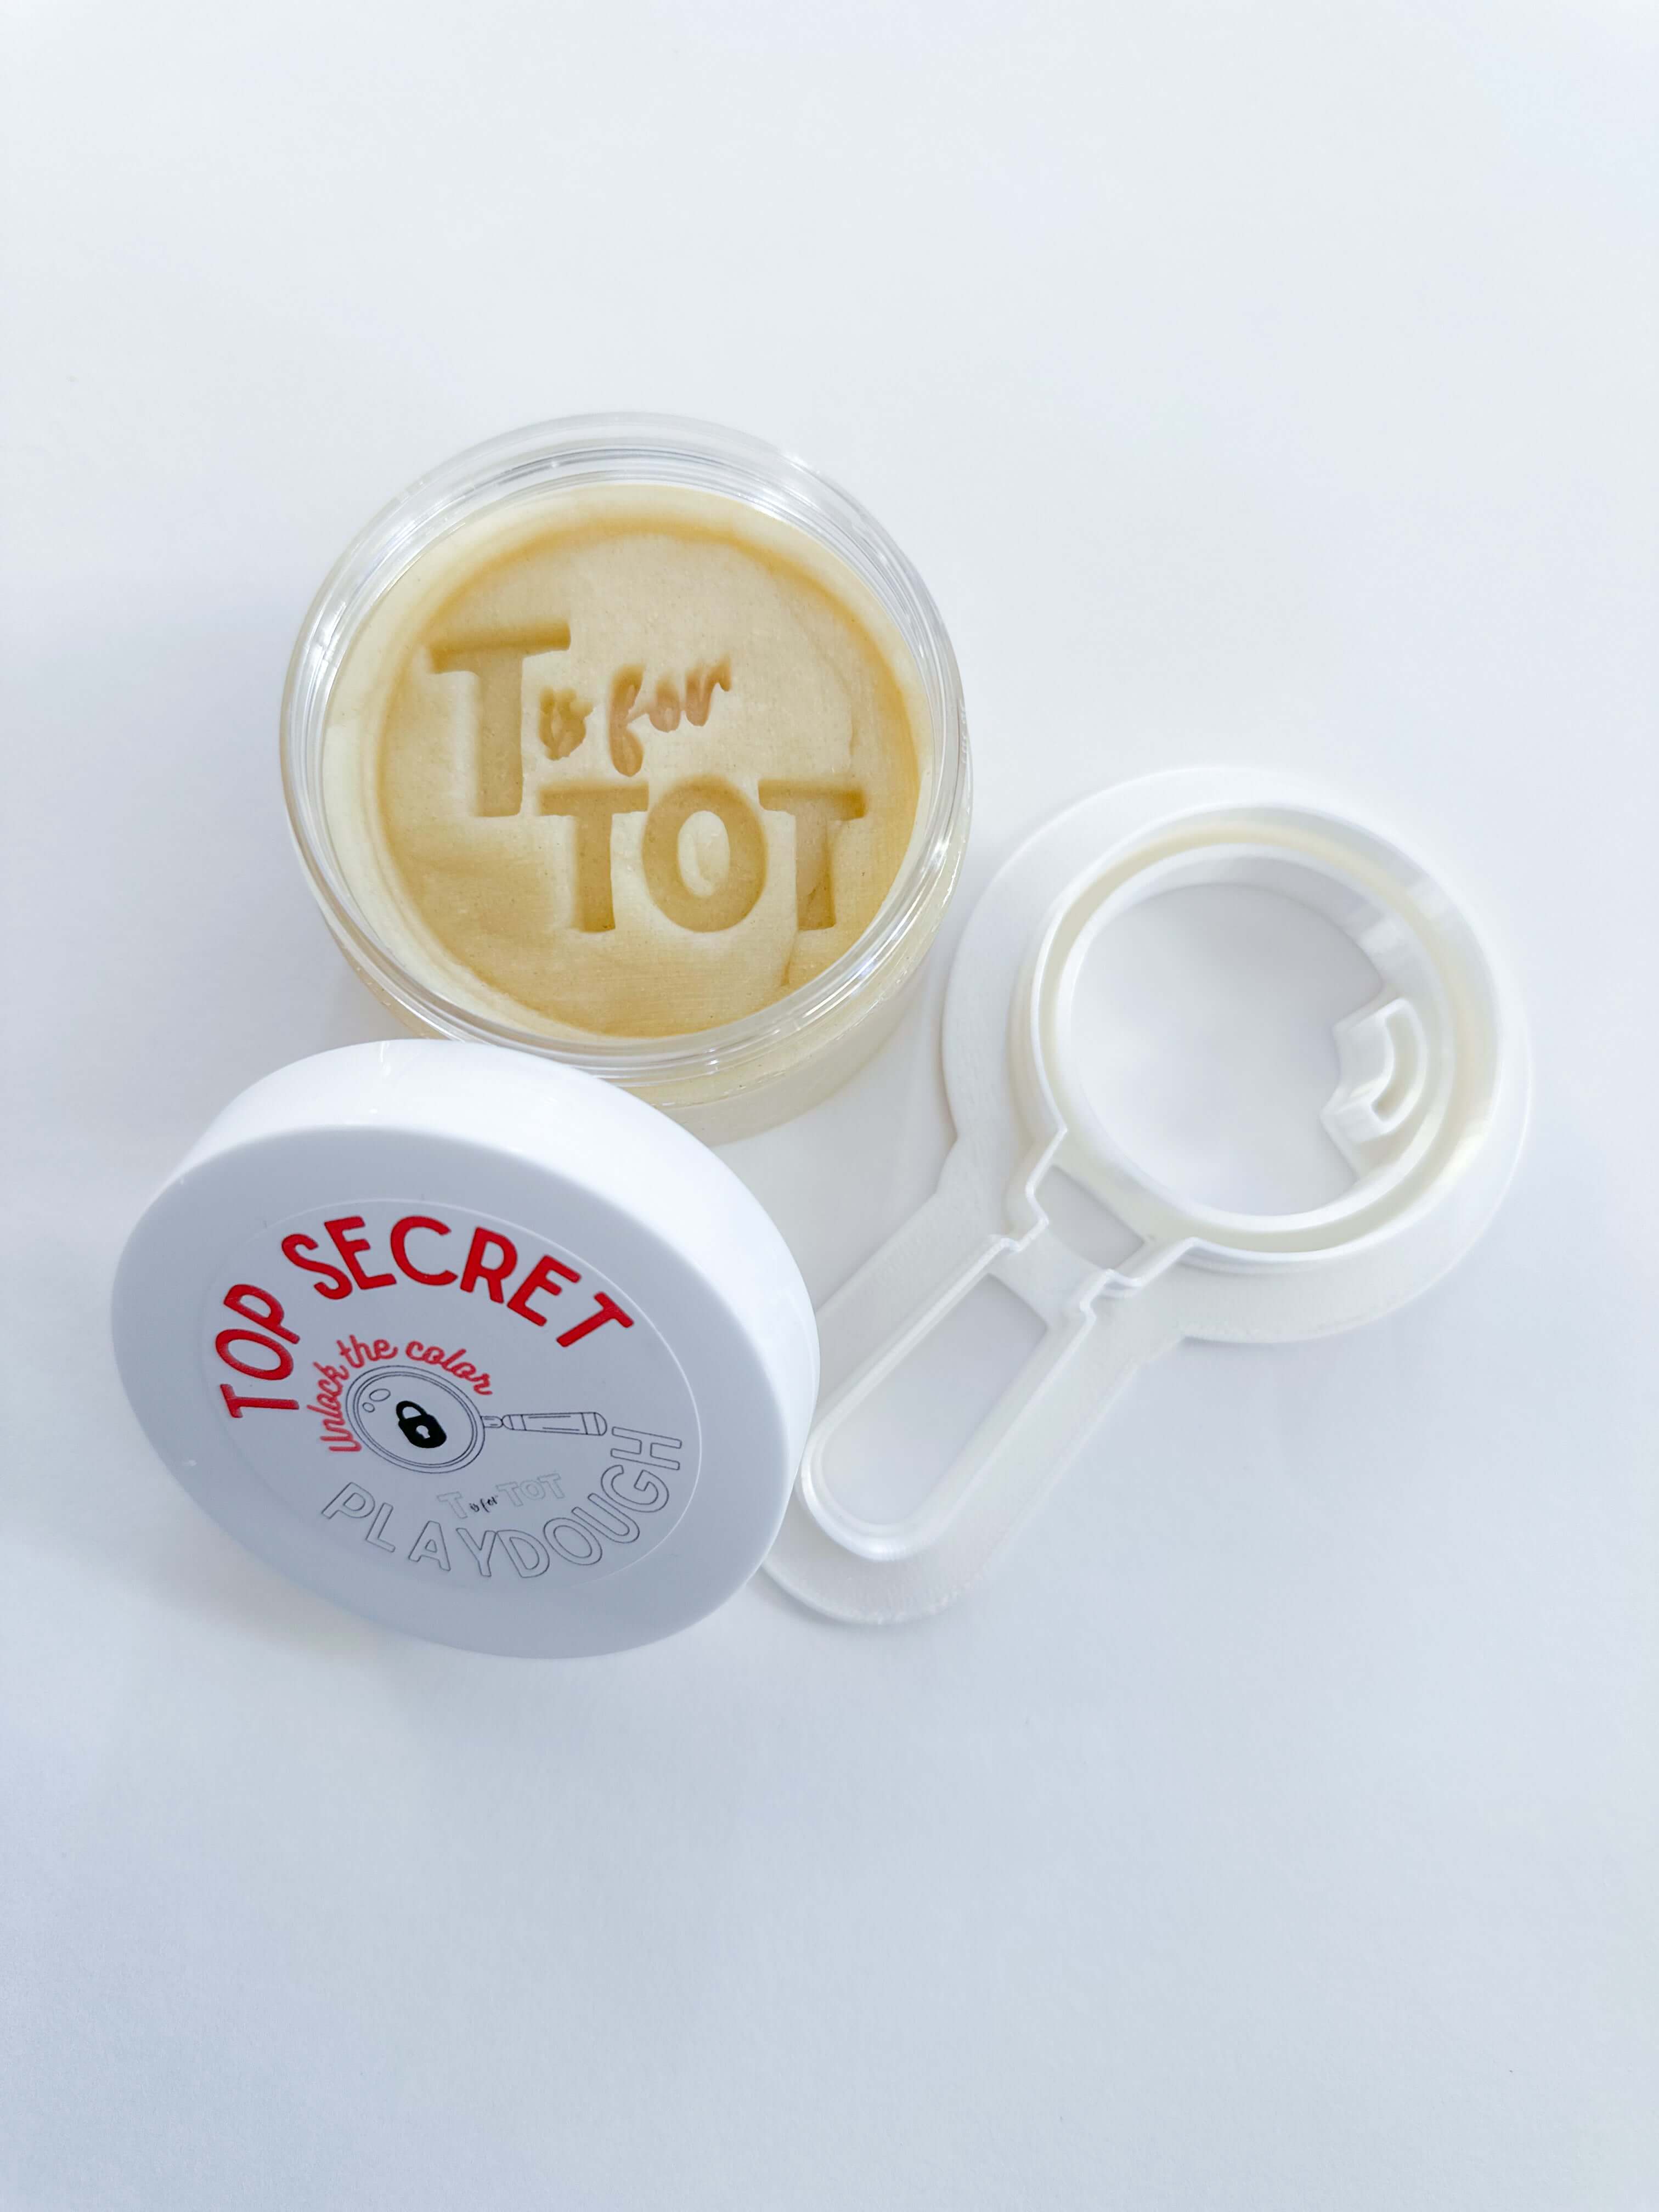 Top Secret Agent Kit